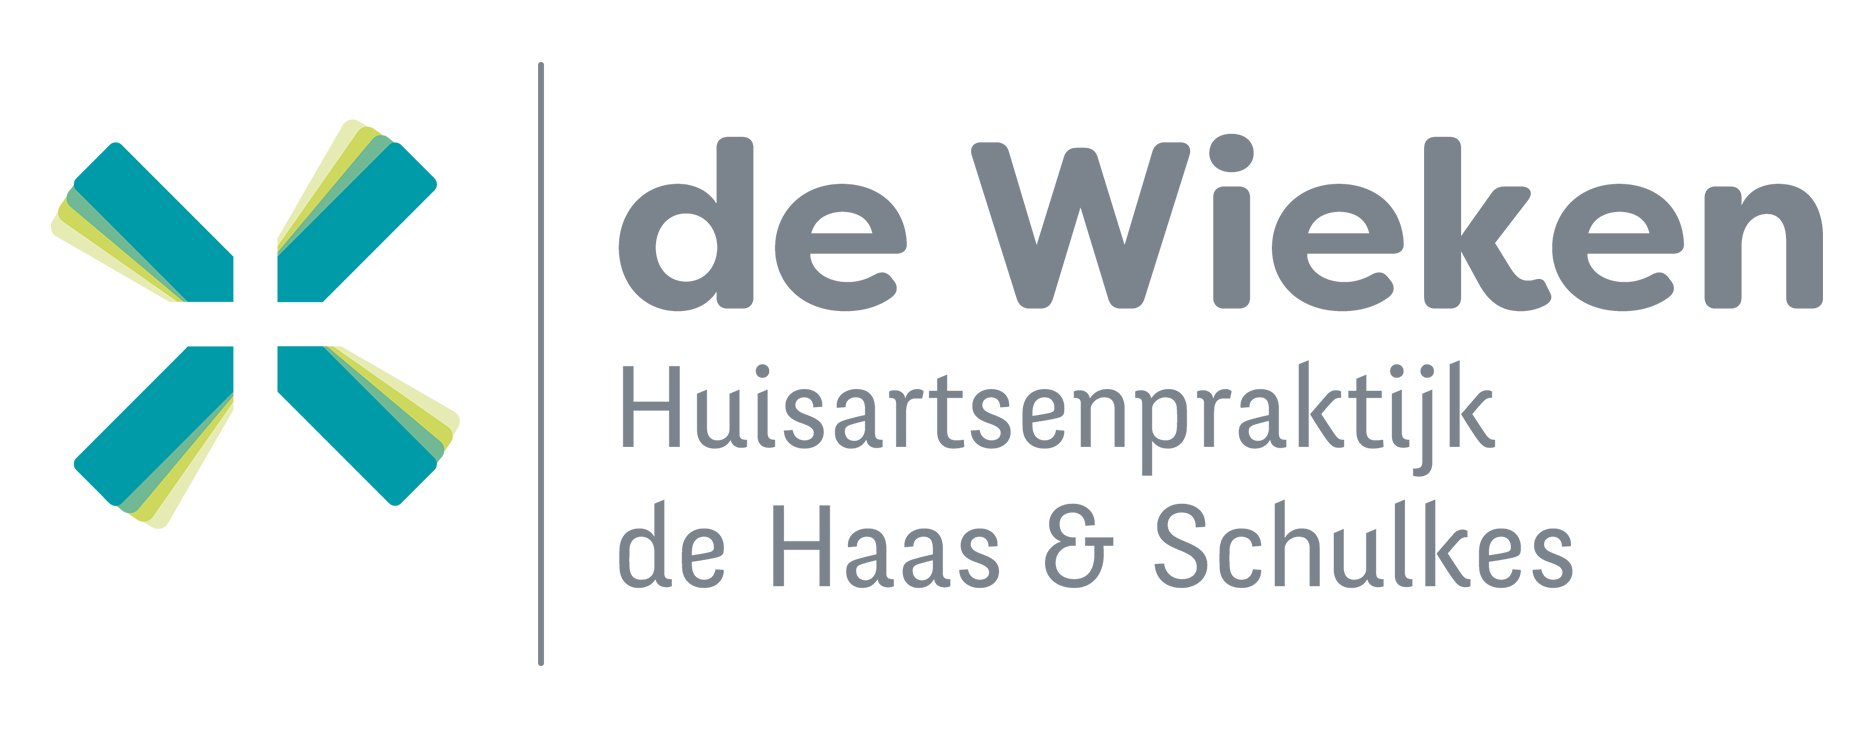 Huisartsenpraktijk de Wieken | de Haas - Schulkes